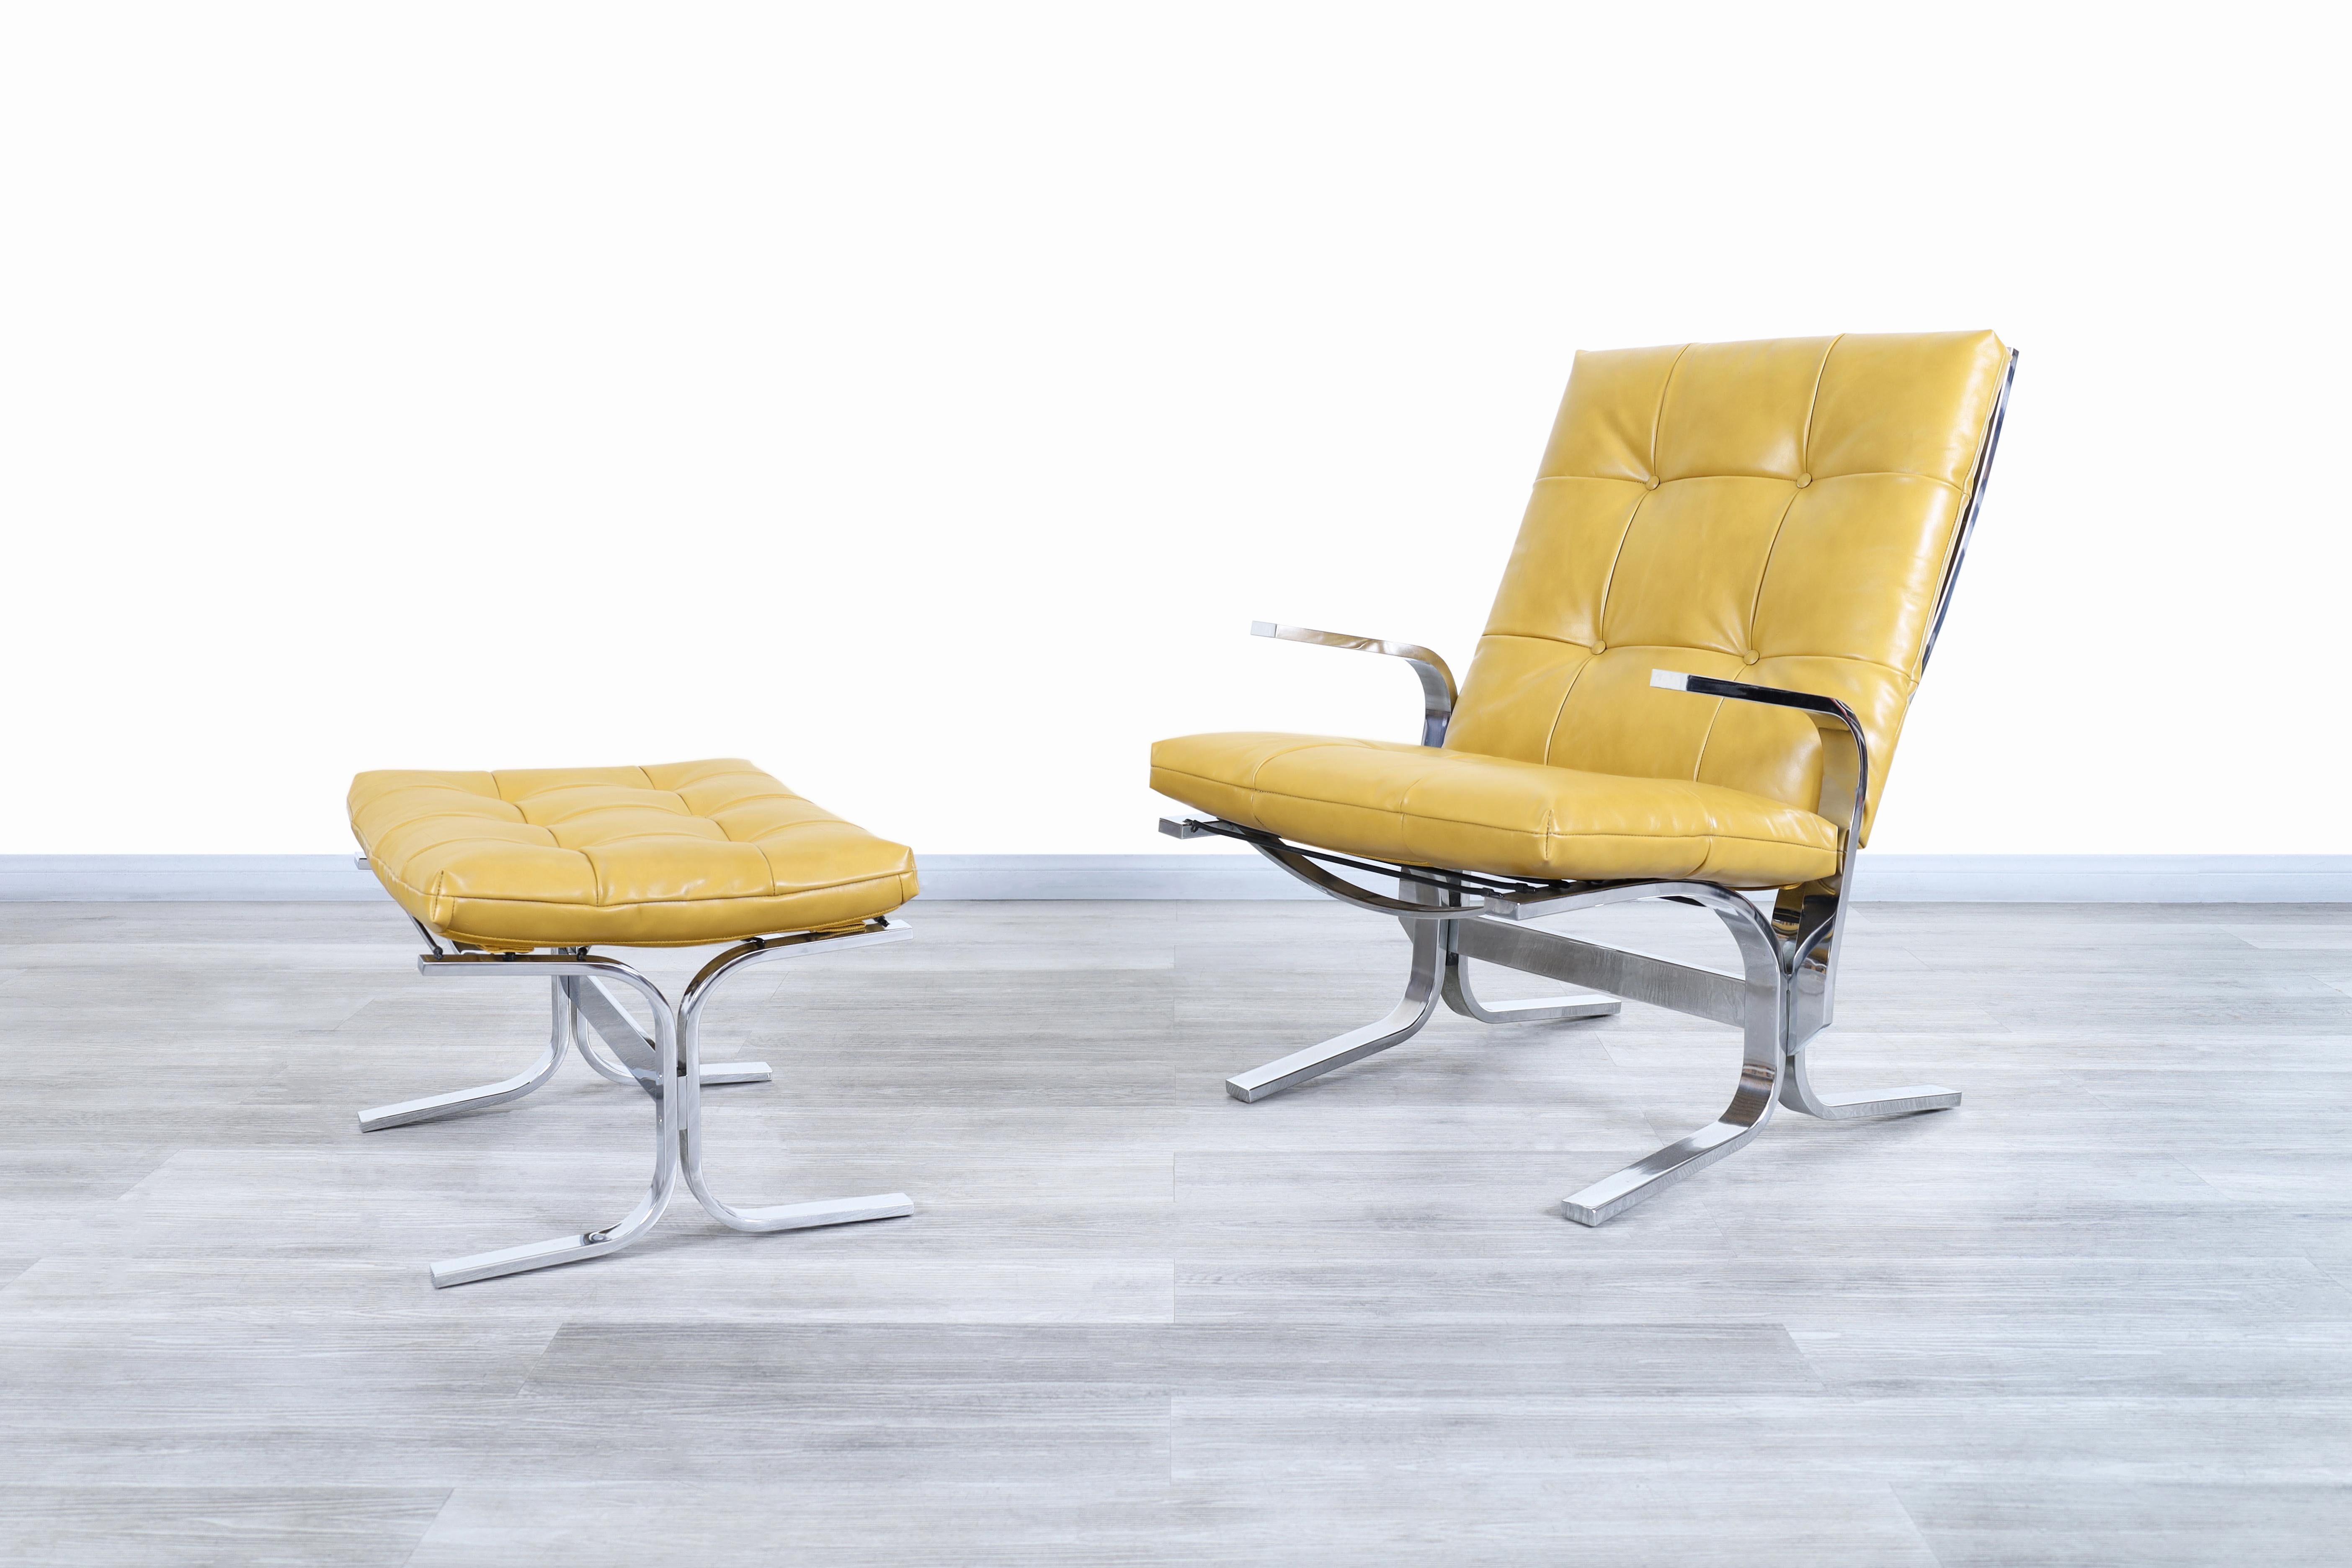 Superbes fauteuils de salon et ottoman en chrome et cuir du milieu du siècle dernier, fabriqués aux États-Unis, vers les années 1970. La chaise et l'ottoman ont un design luxueux grâce aux matériaux élégants utilisés pour leur construction. La